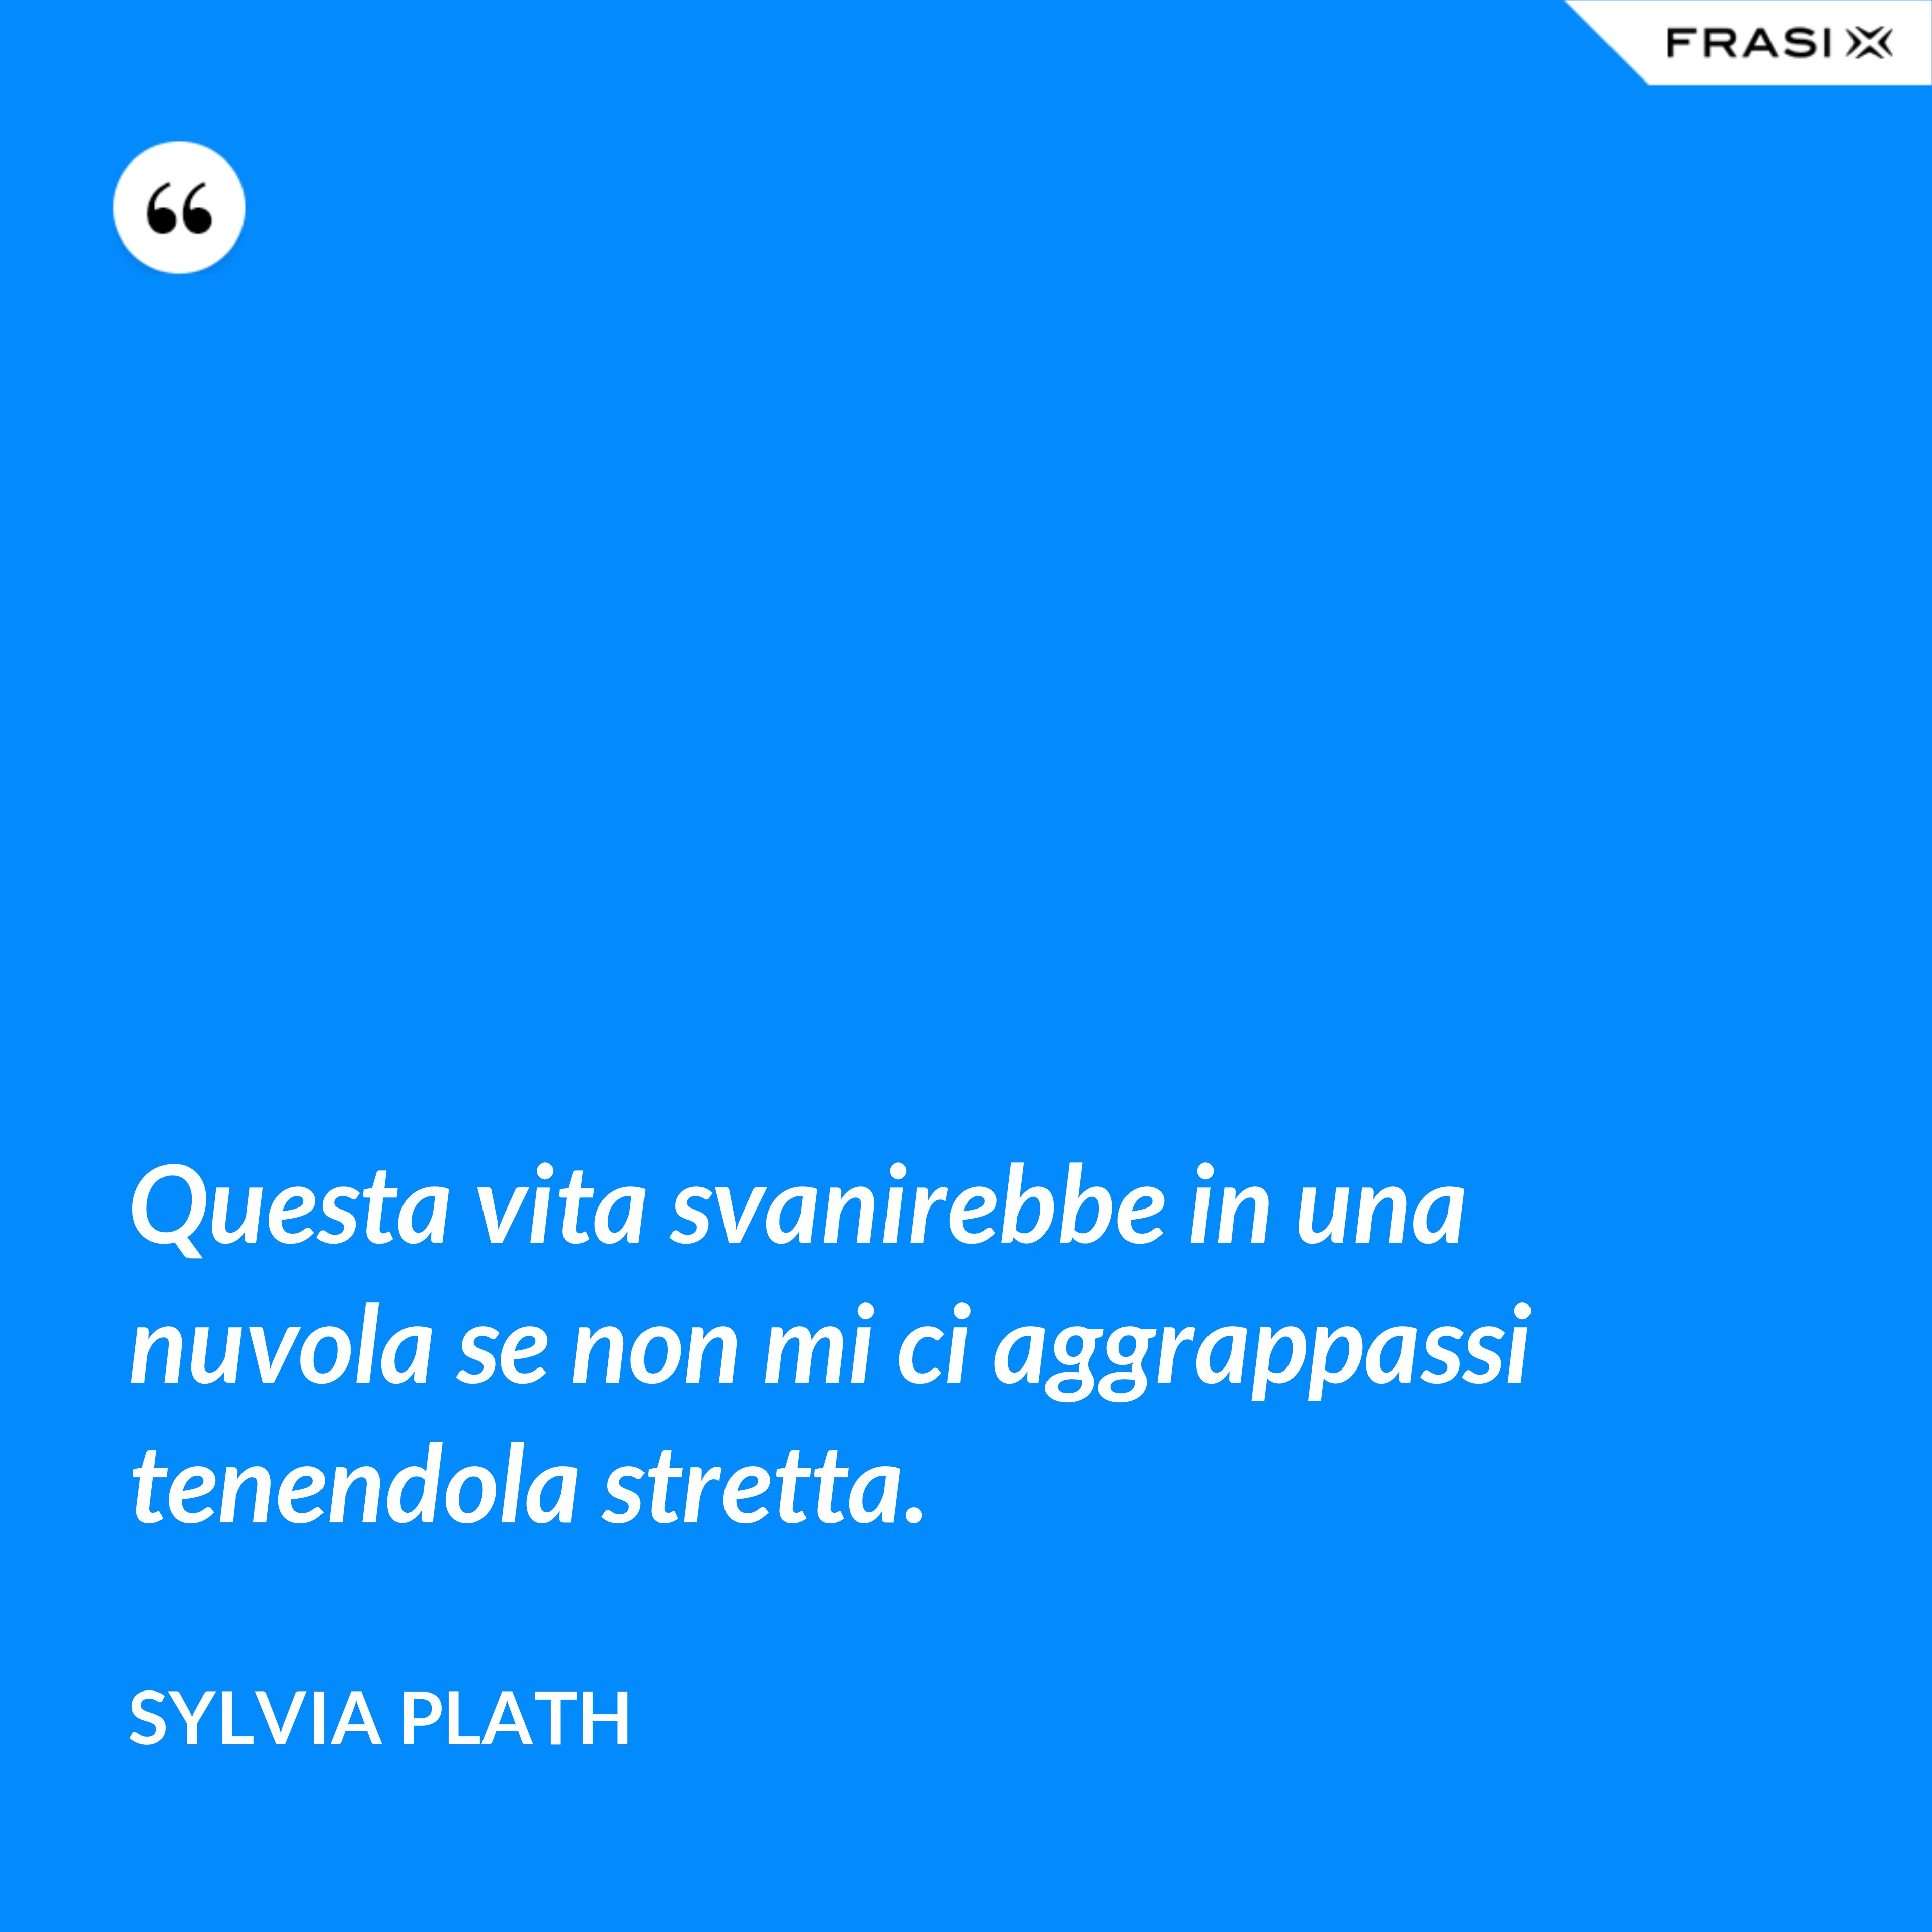 Questa vita svanirebbe in una nuvola se non mi ci aggrappassi tenendola stretta. - Sylvia Plath